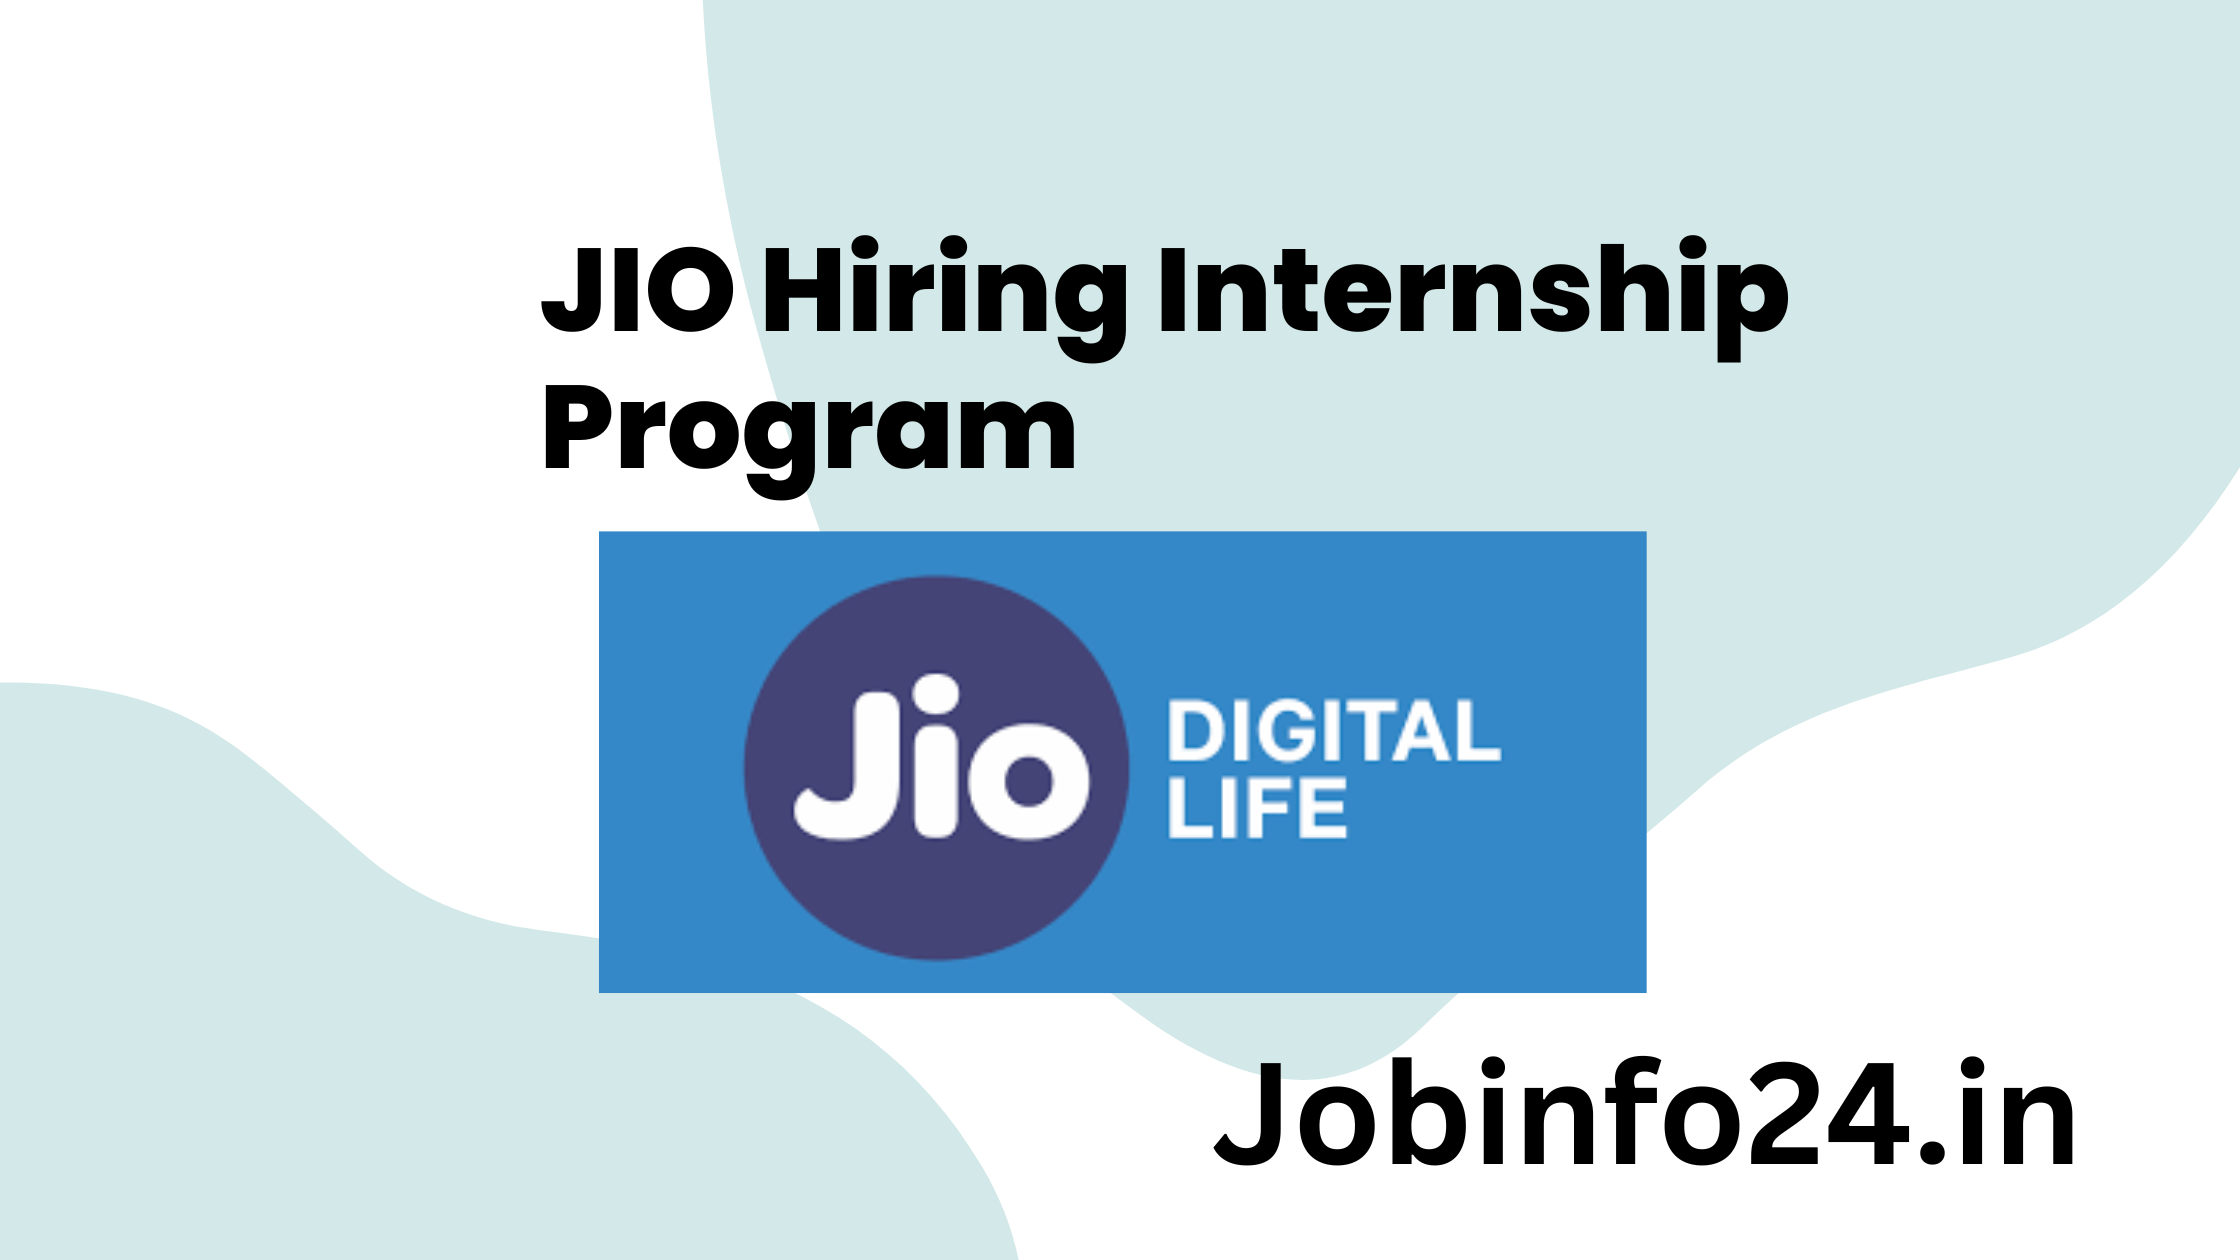 JIO Hiring Internship Program